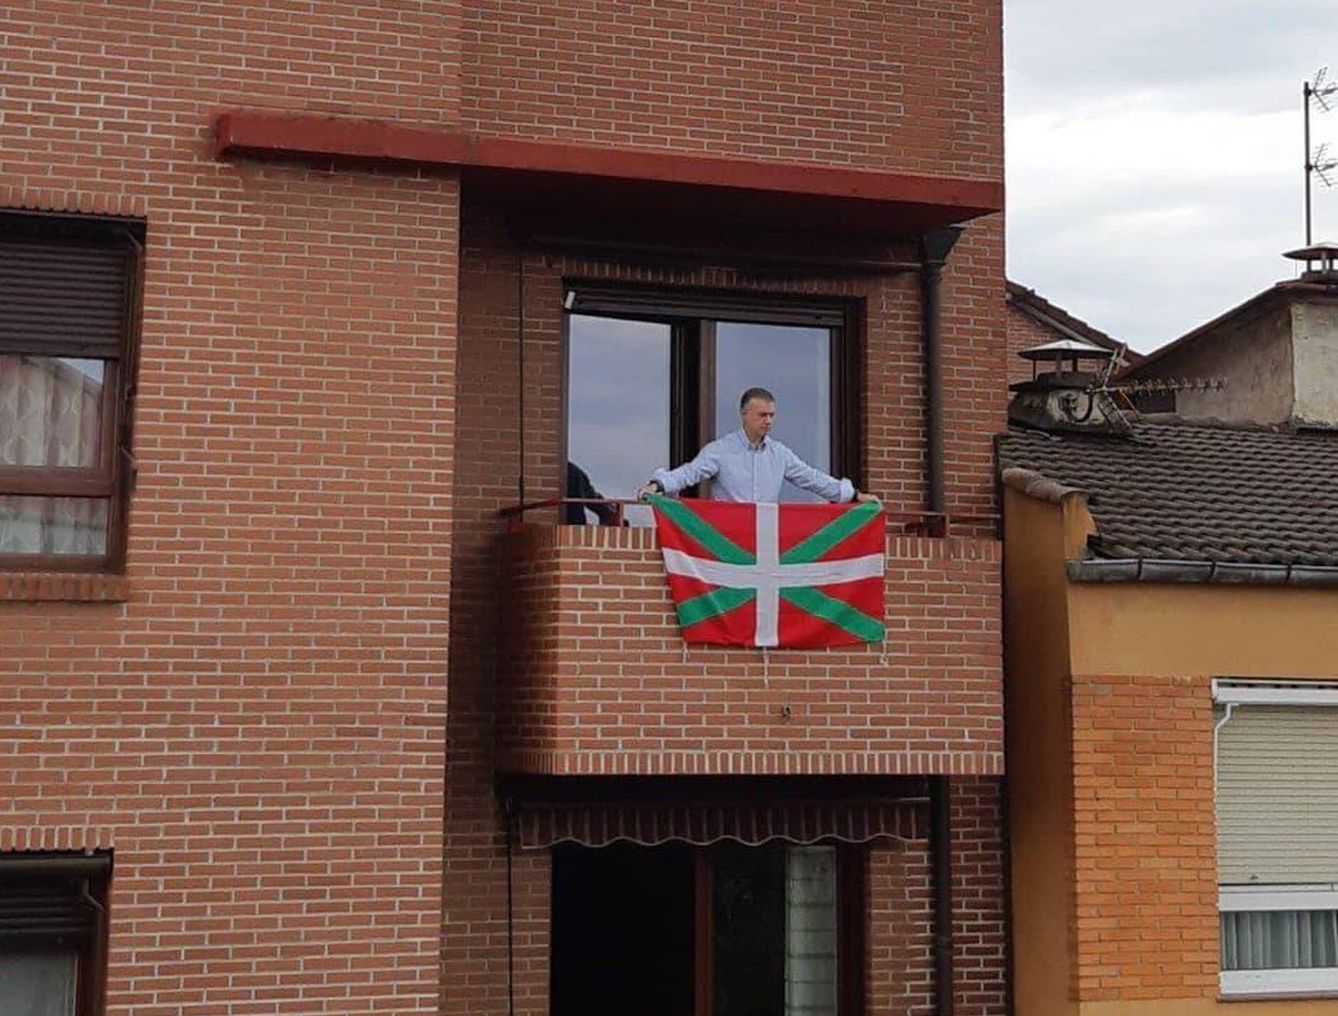 El lehendakari coloca la ikurriña en su balcón con motivo del Aberri Eguna. (PNV)